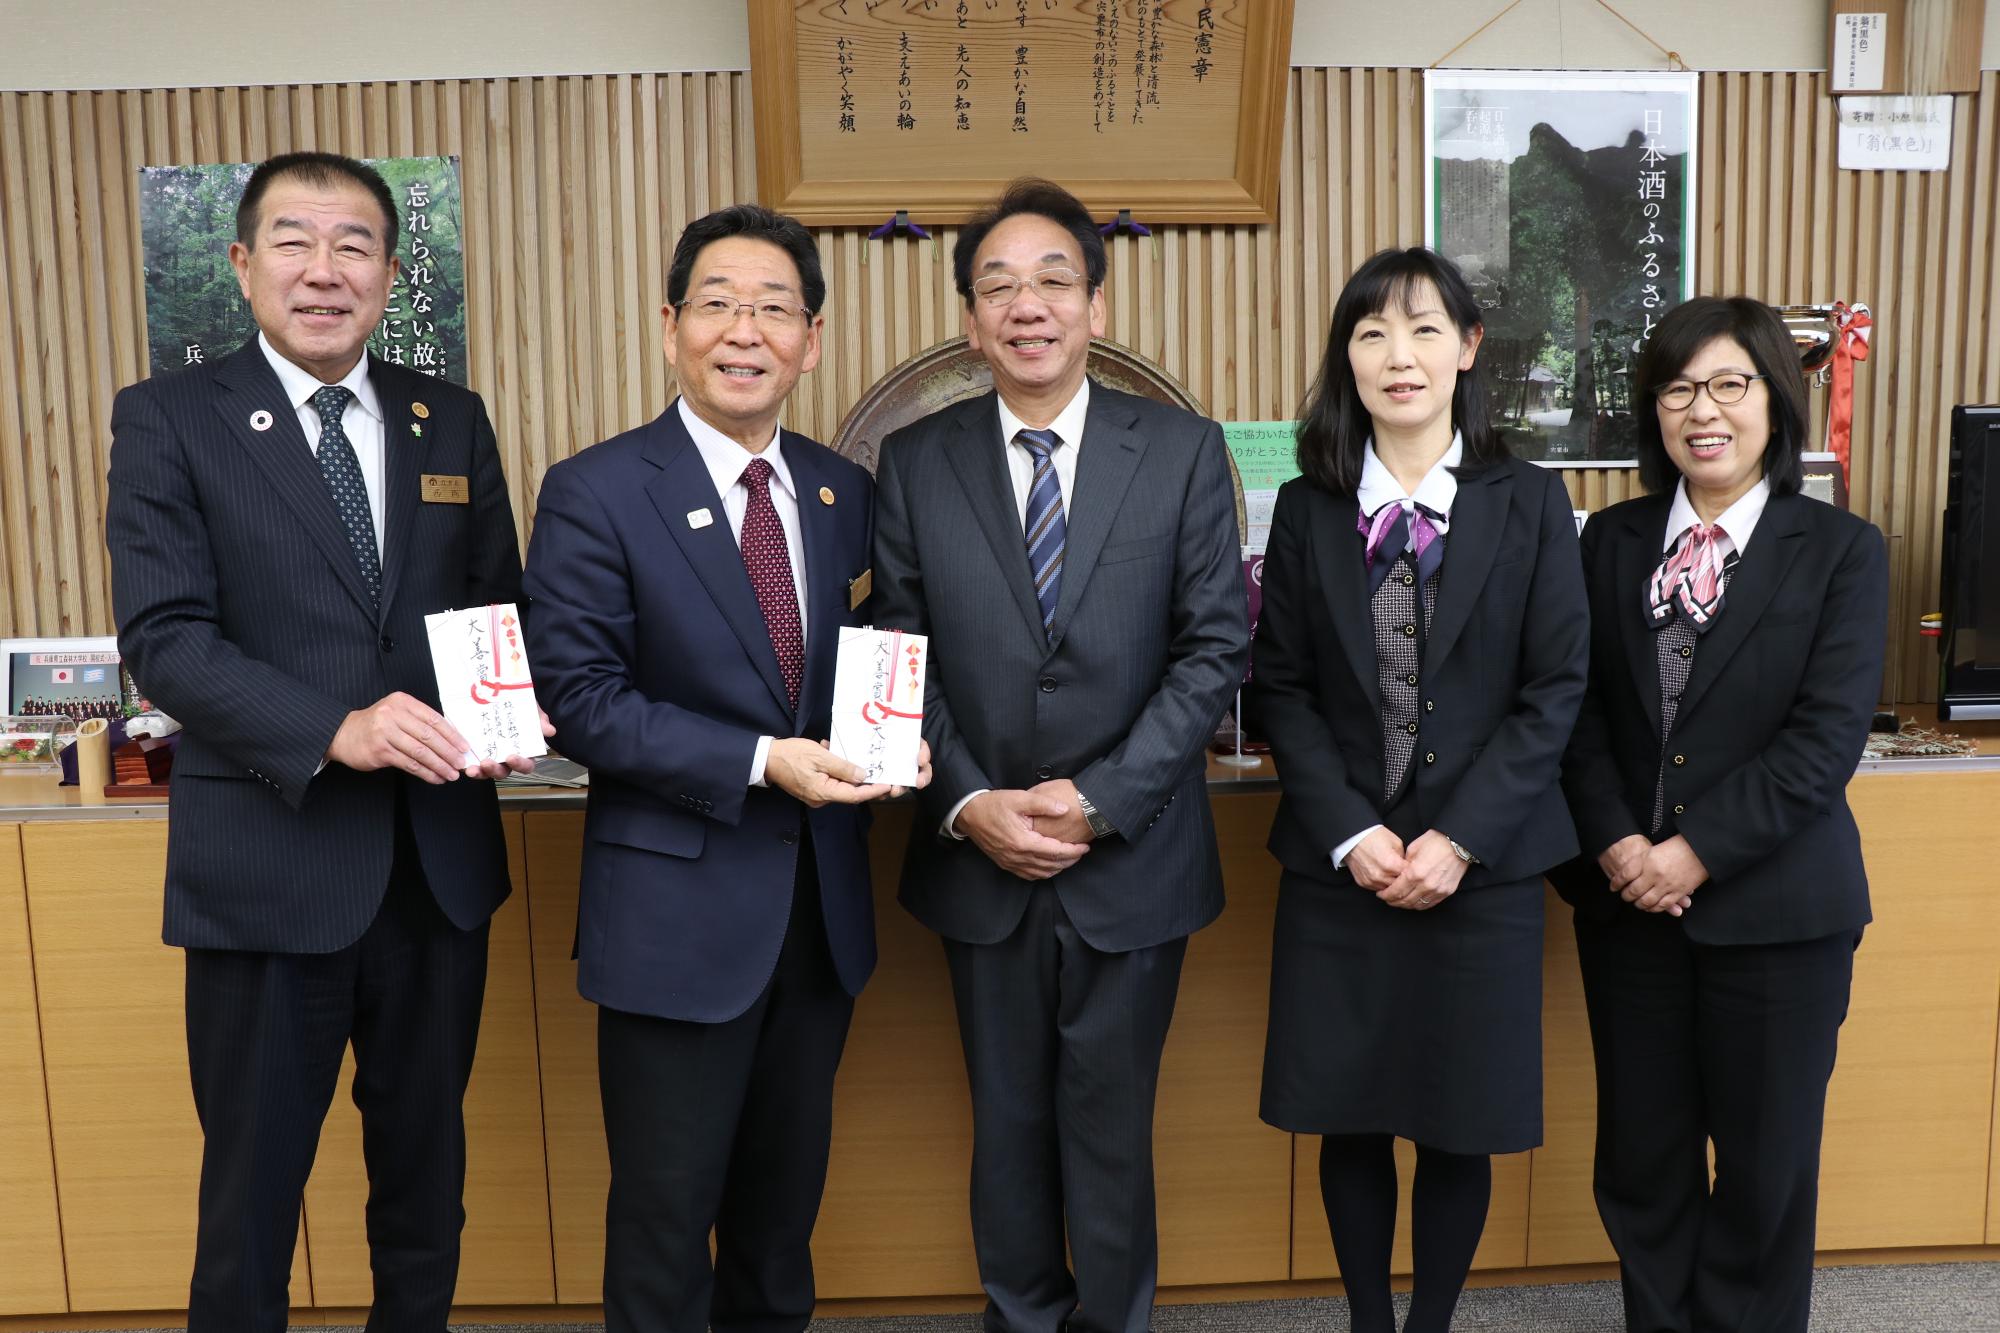 大砂氏と株式会社アシストの社員らと並ぶ市長と教育長の写真